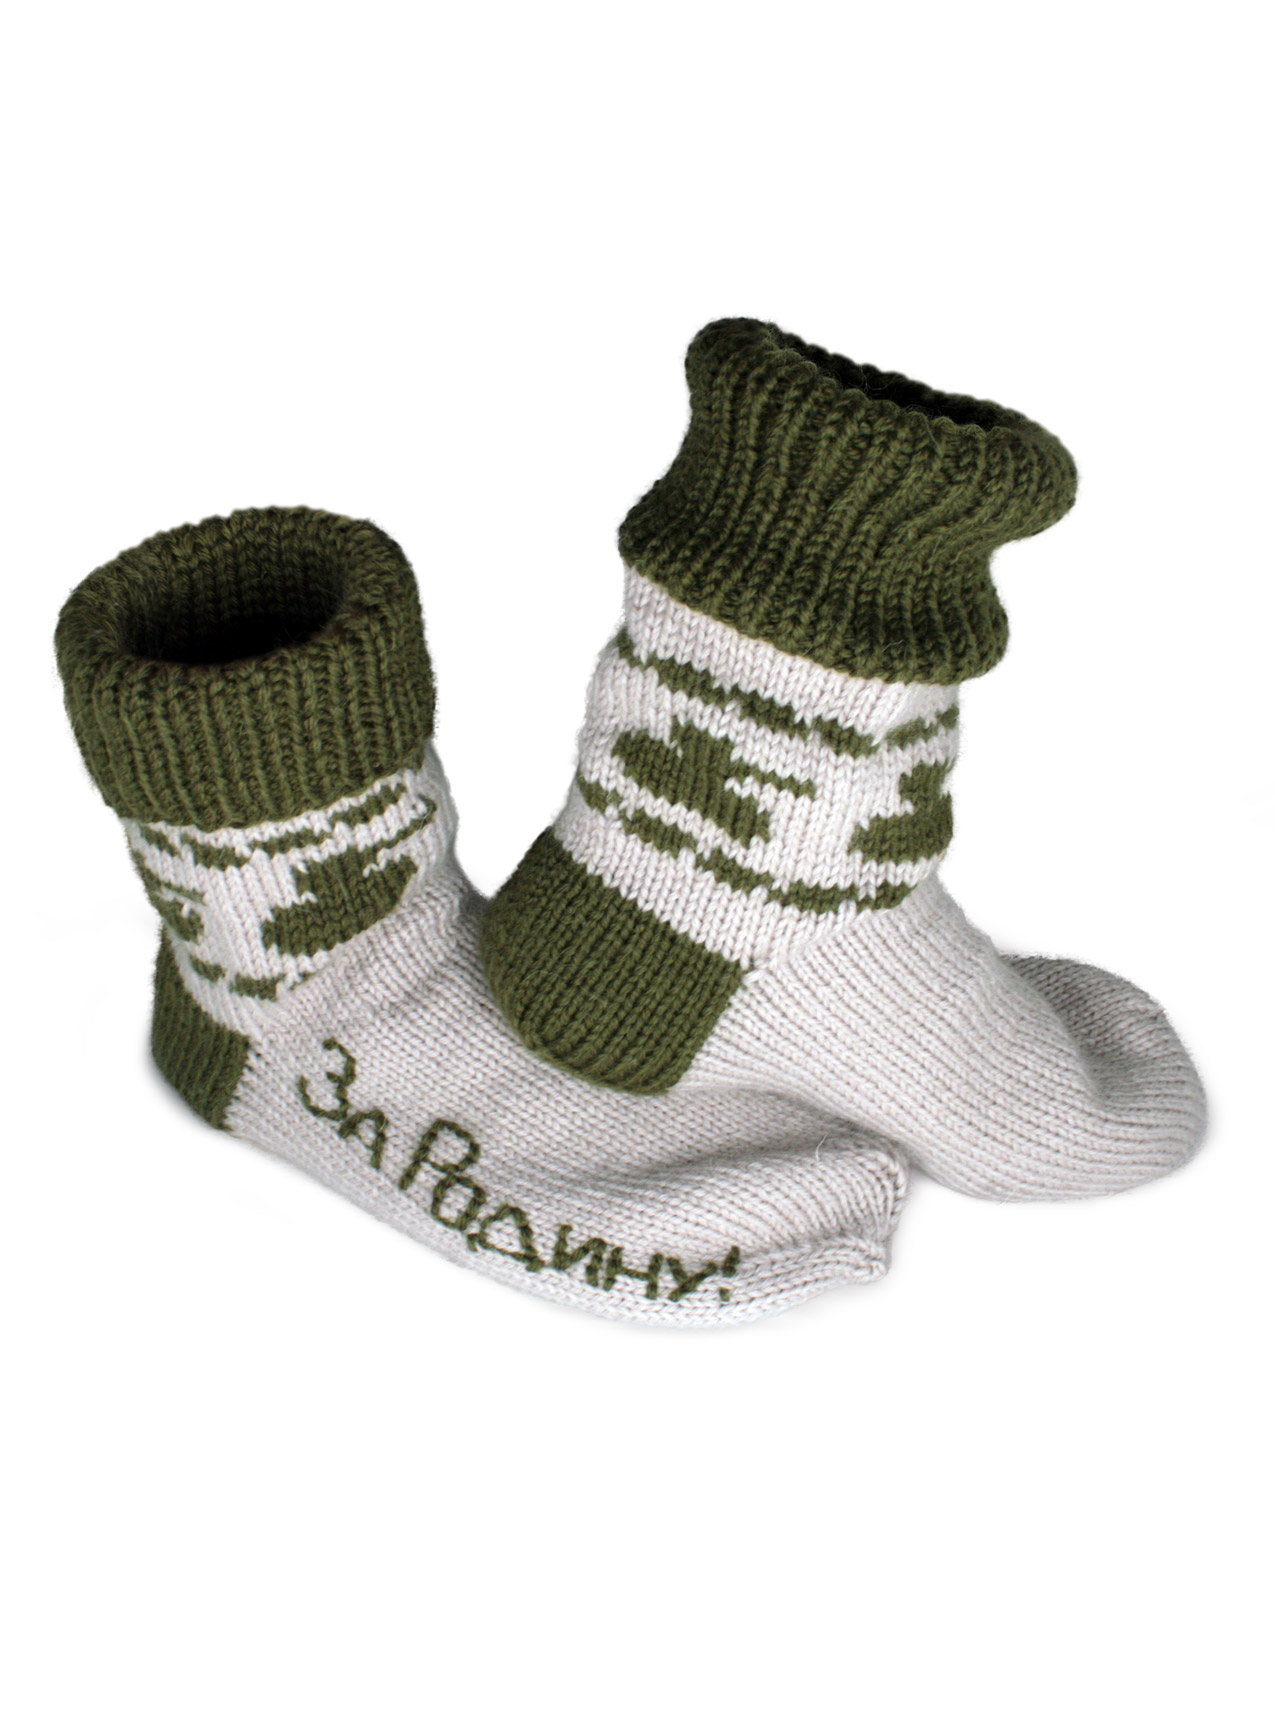 Зимние шерстяные мужские носки из толстой пряжи к 23 февраля. Ручная работа. Арт:2854.